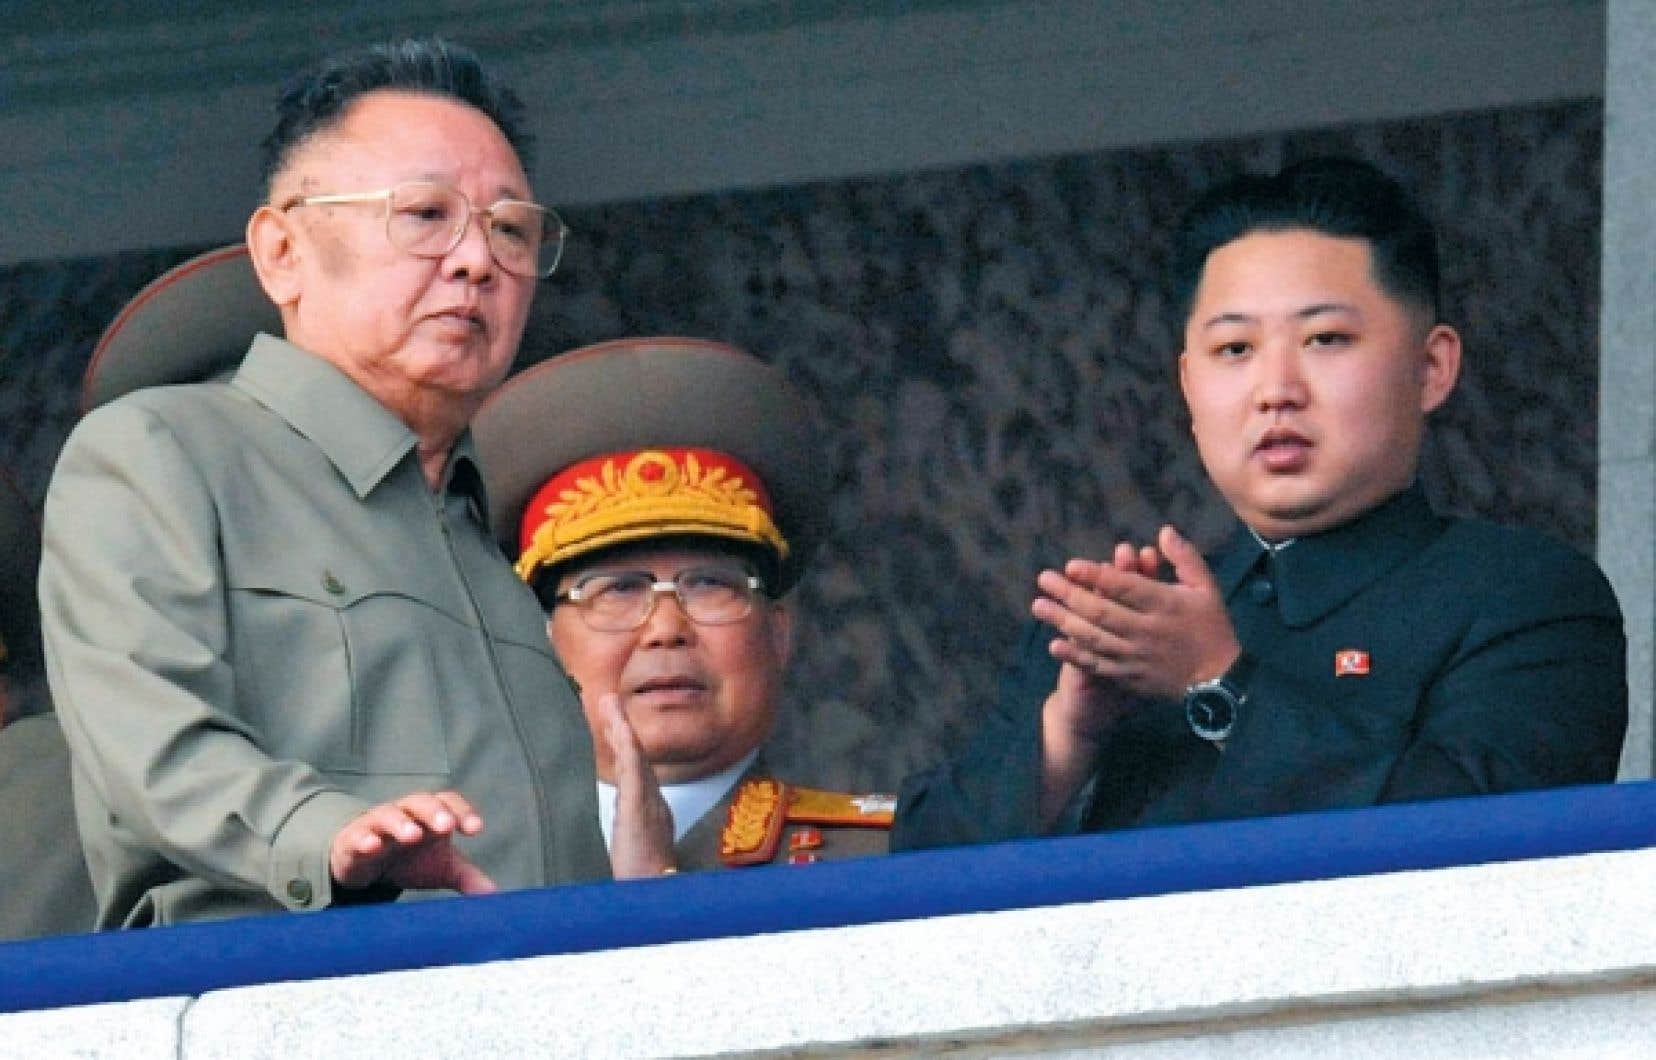 La Corée du Nord interdit de rire à l'occasion du 10e anniversaire